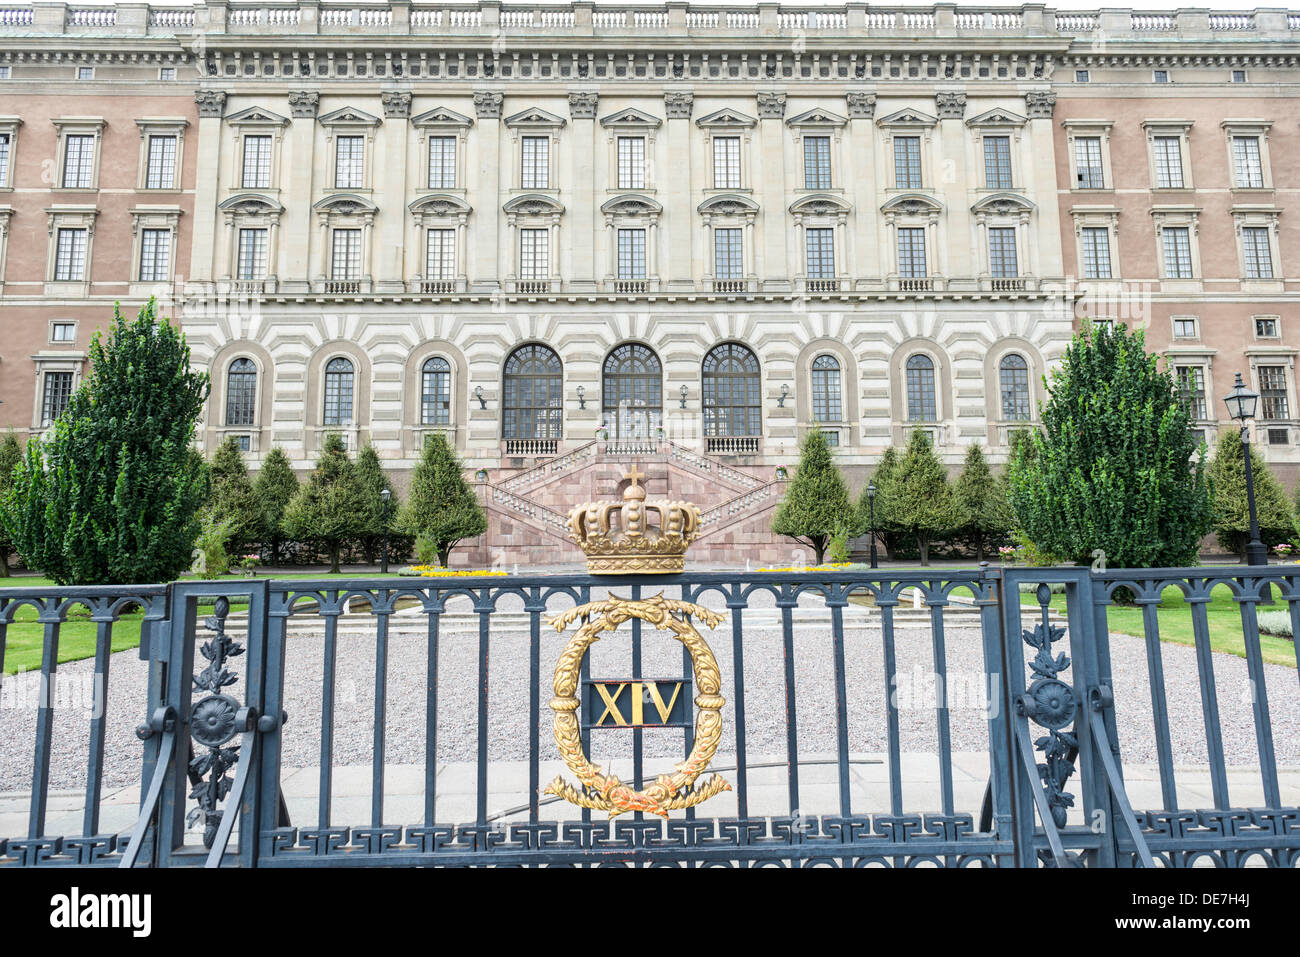 Royal Palace in Stockholm - Kungliga slottet Stock Photo